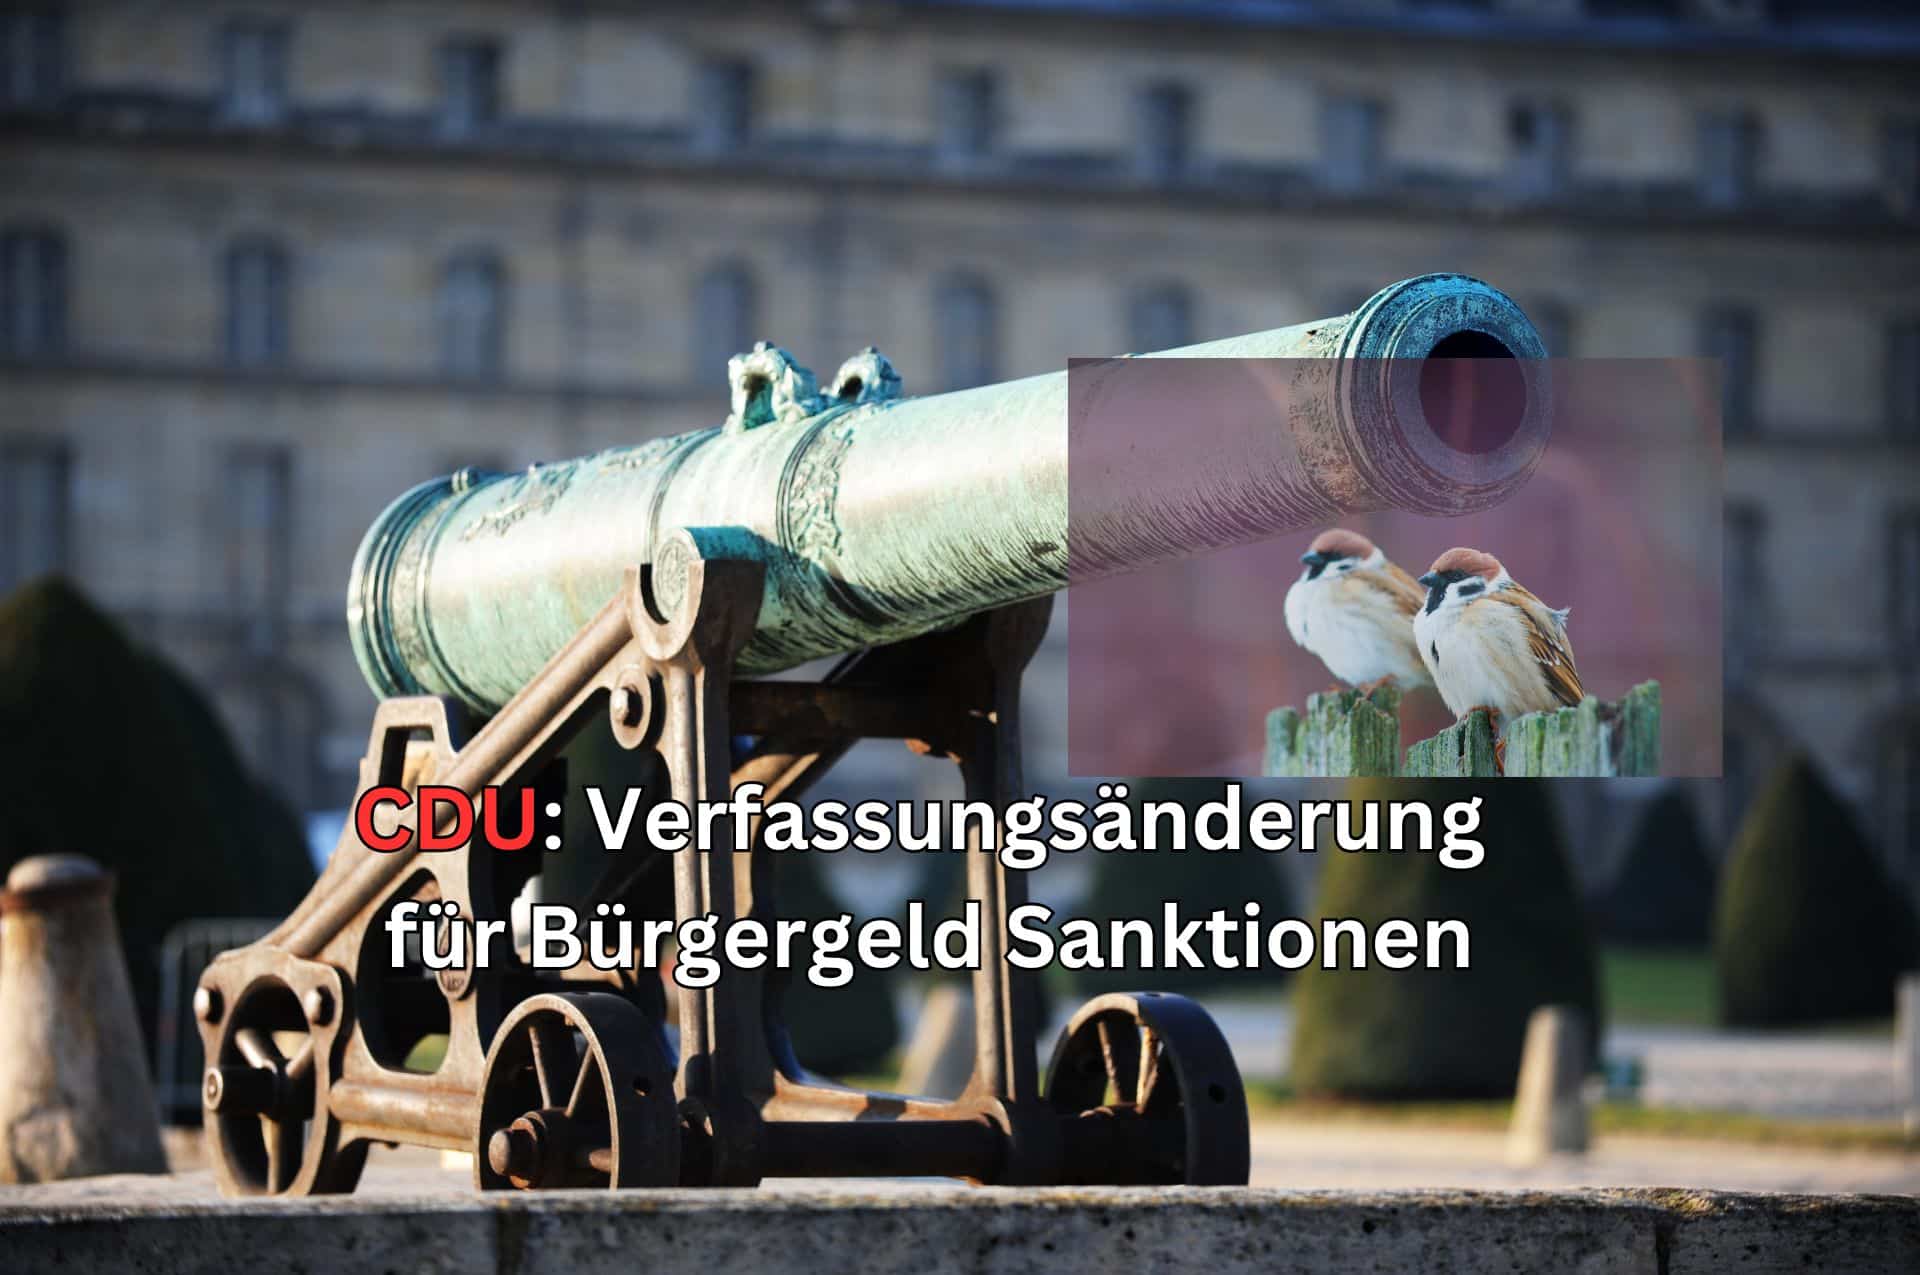 Die CDU will eine Verfassungsänderung, um Bürgergeld Bezieher mit Sanktionen belegen zu können und den Regelsatz komplett zu streichen.